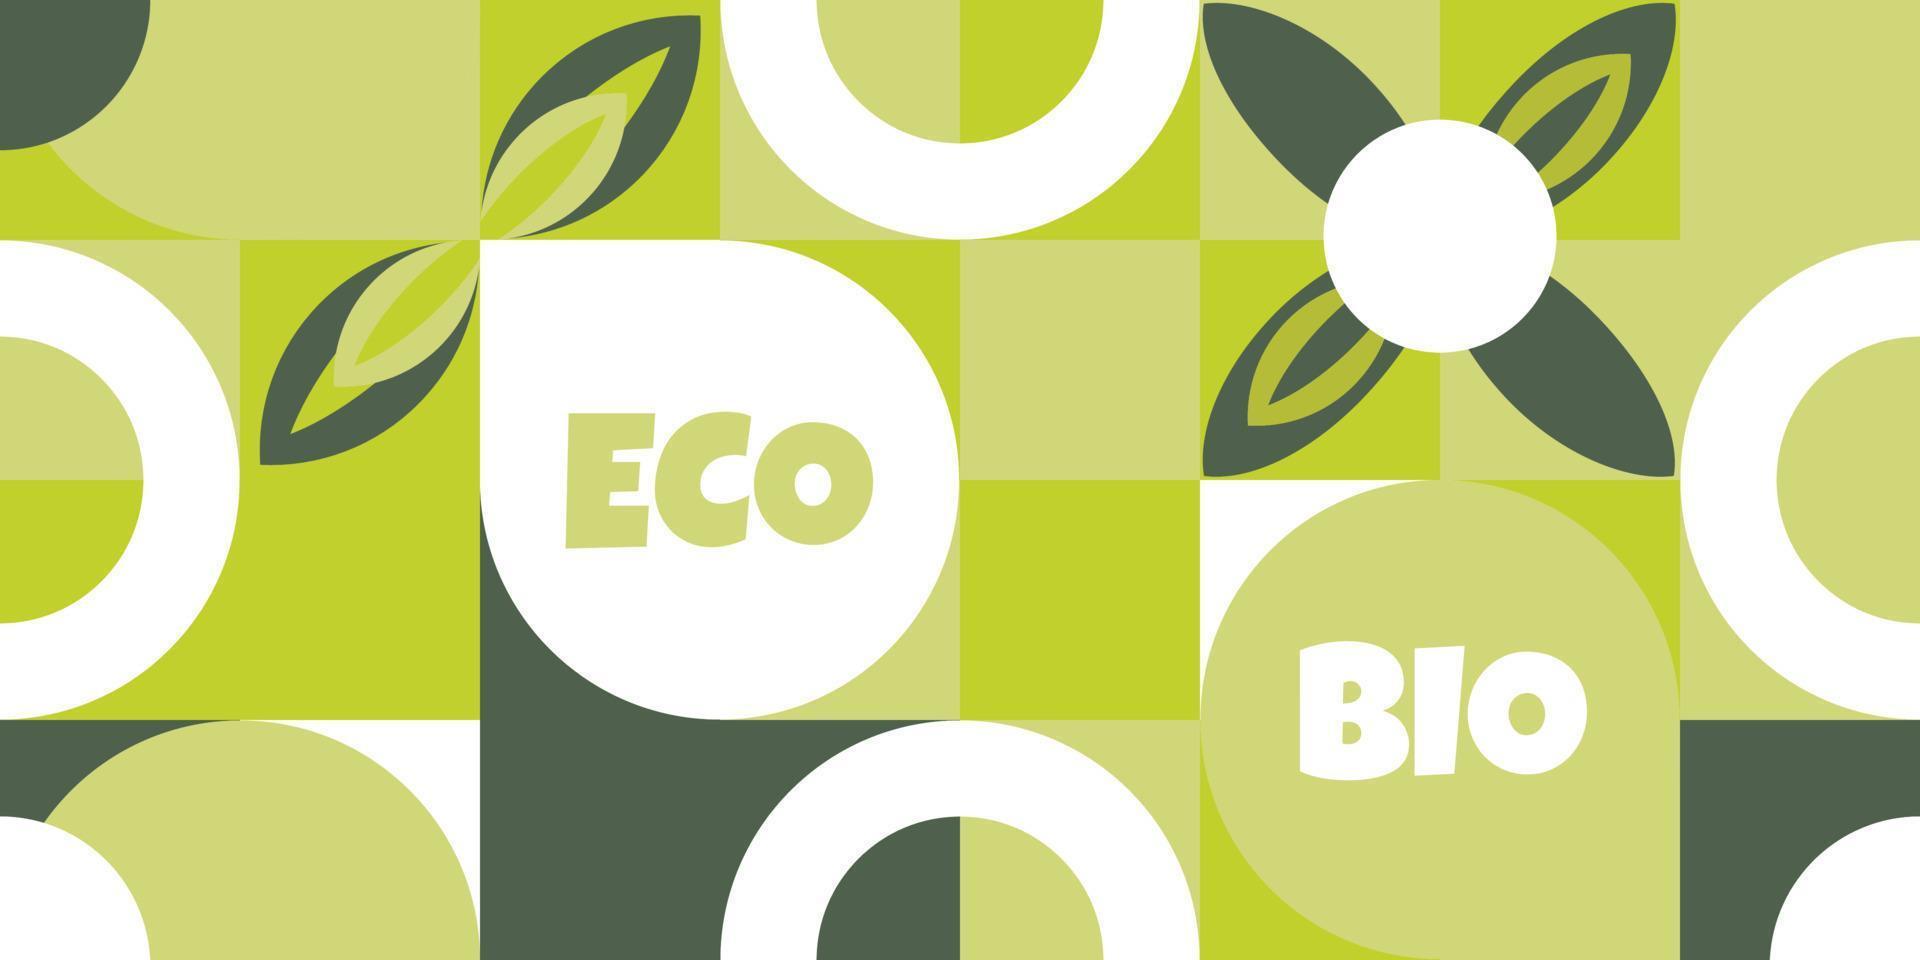 patrón transparente con hojas verdes, embalaje ecológico. bioetiqueta para proyectos sociales ecológicos, pancarta en estilo natural, mosaico de formas geométricas blancas. ilustración vectorial plana. vector